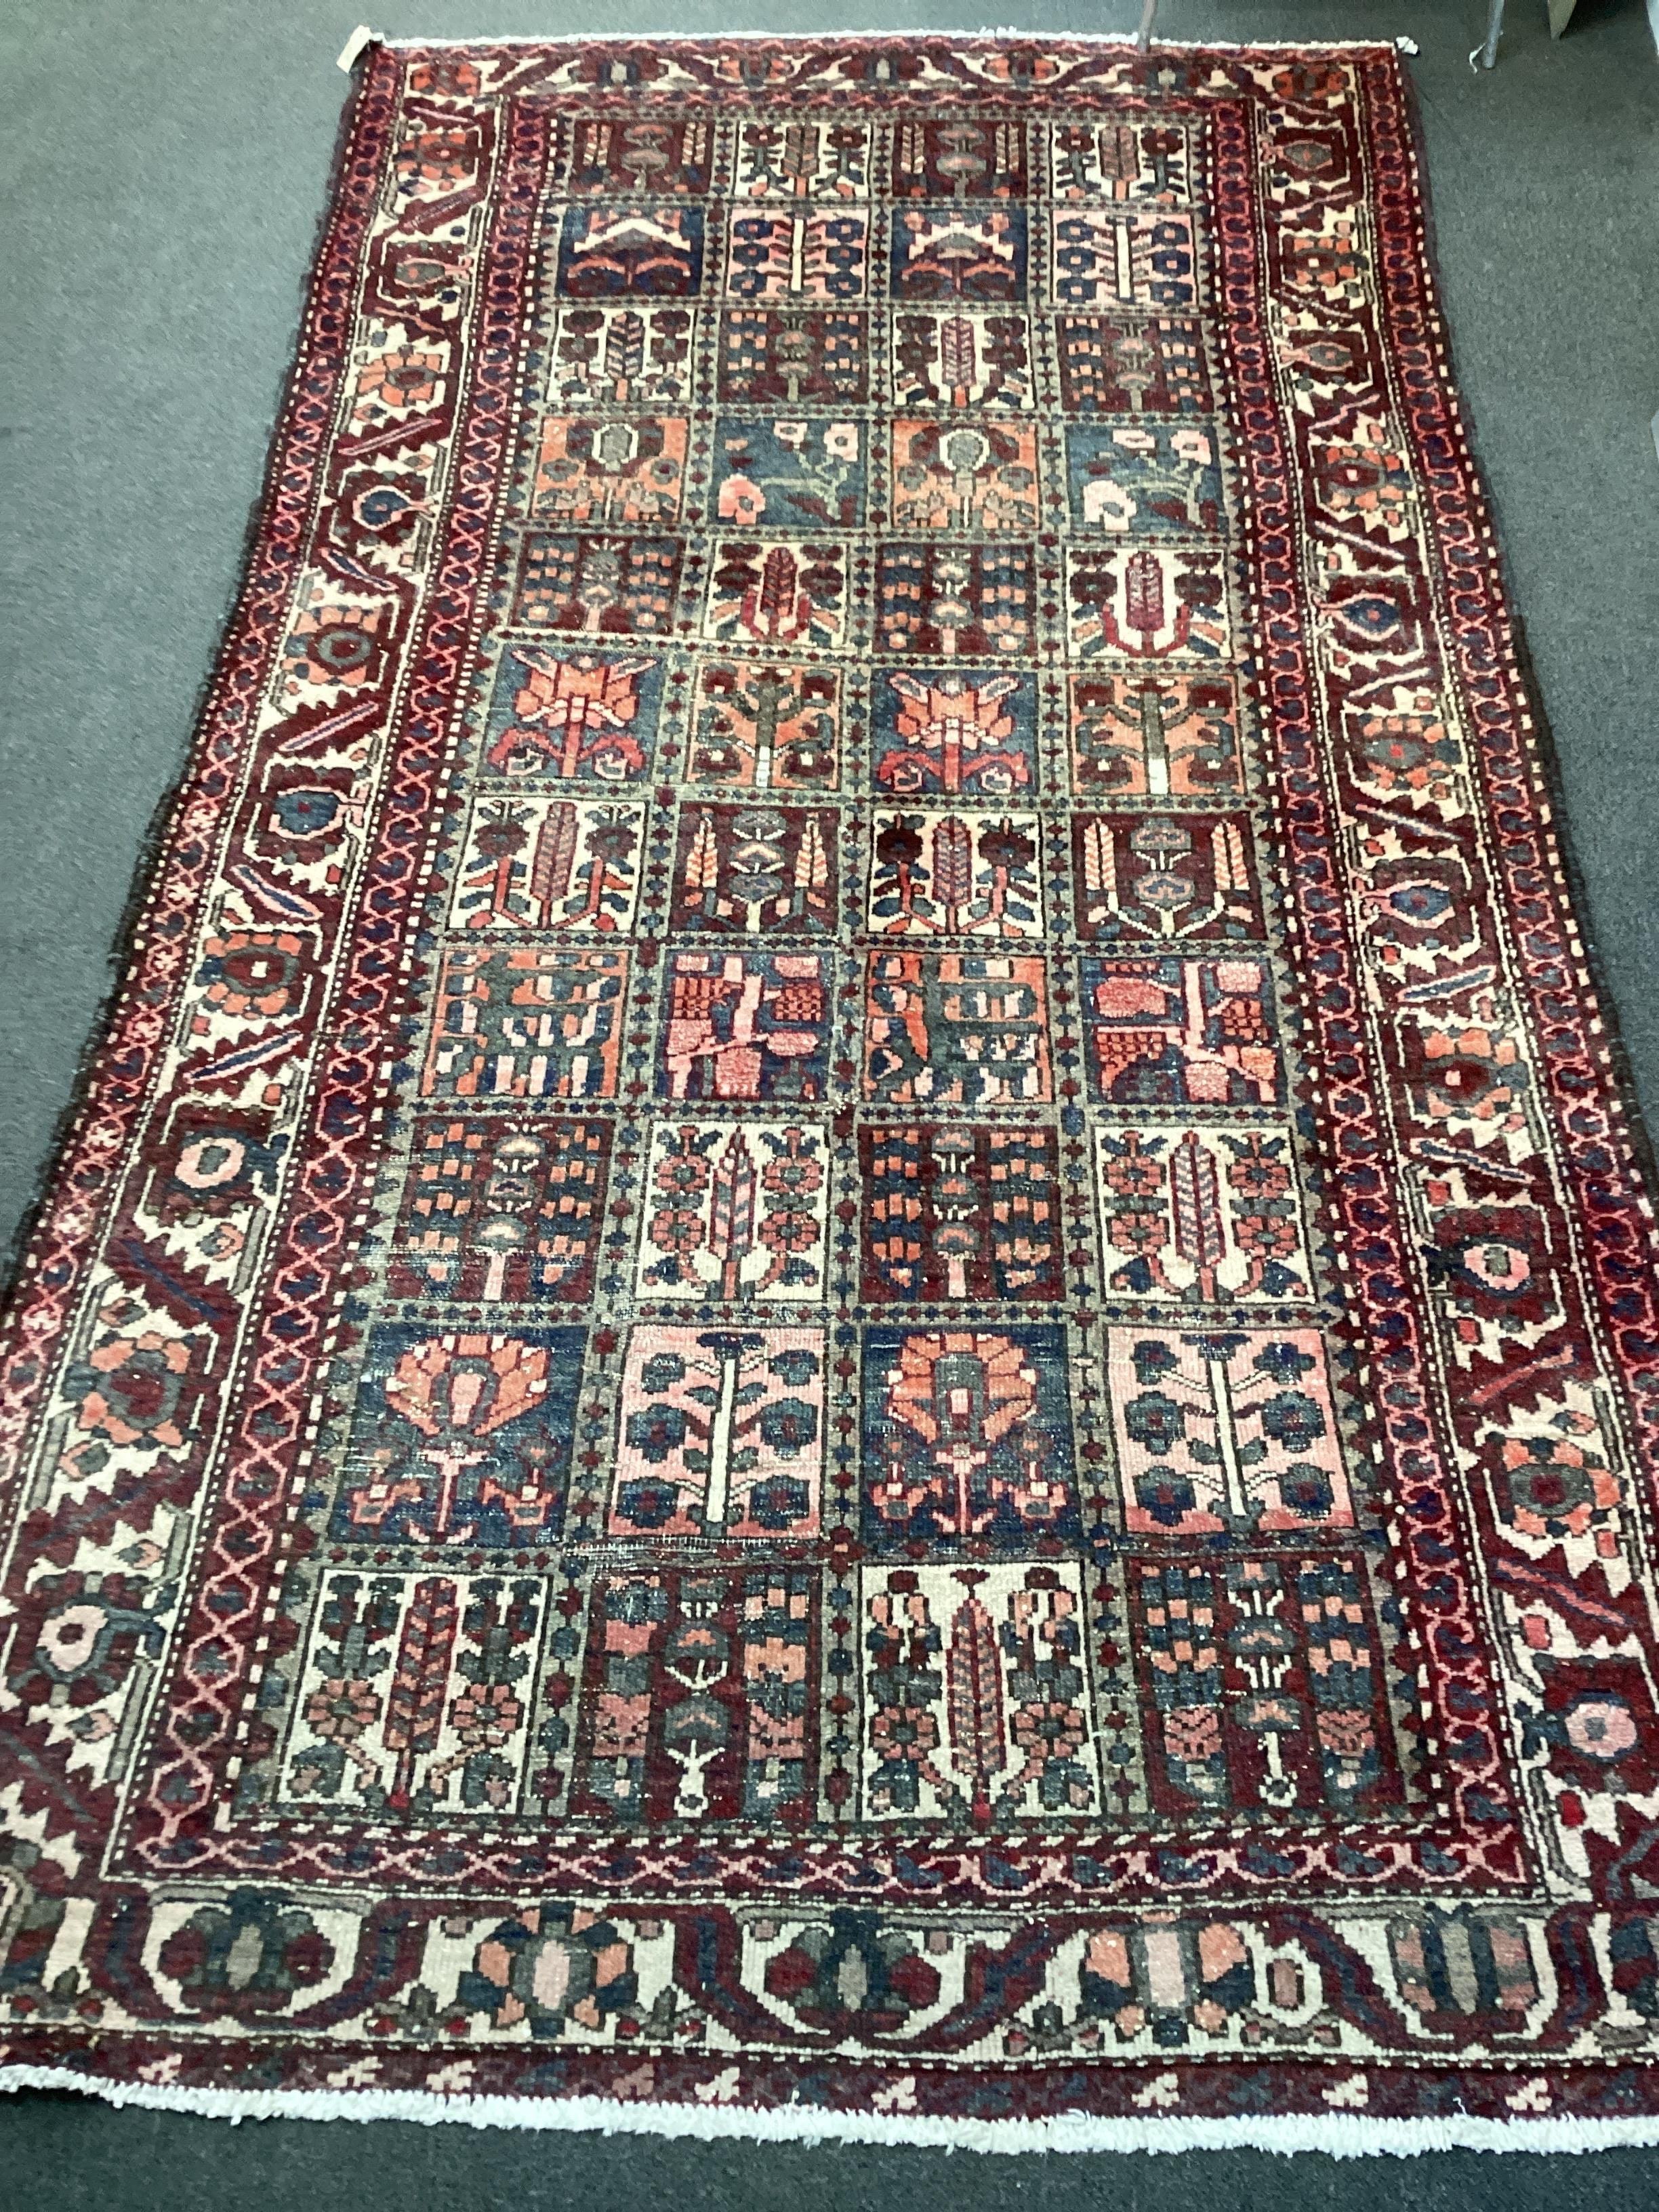 A Baktiari carpet woven panels of floral devices, 300cm x 156cm